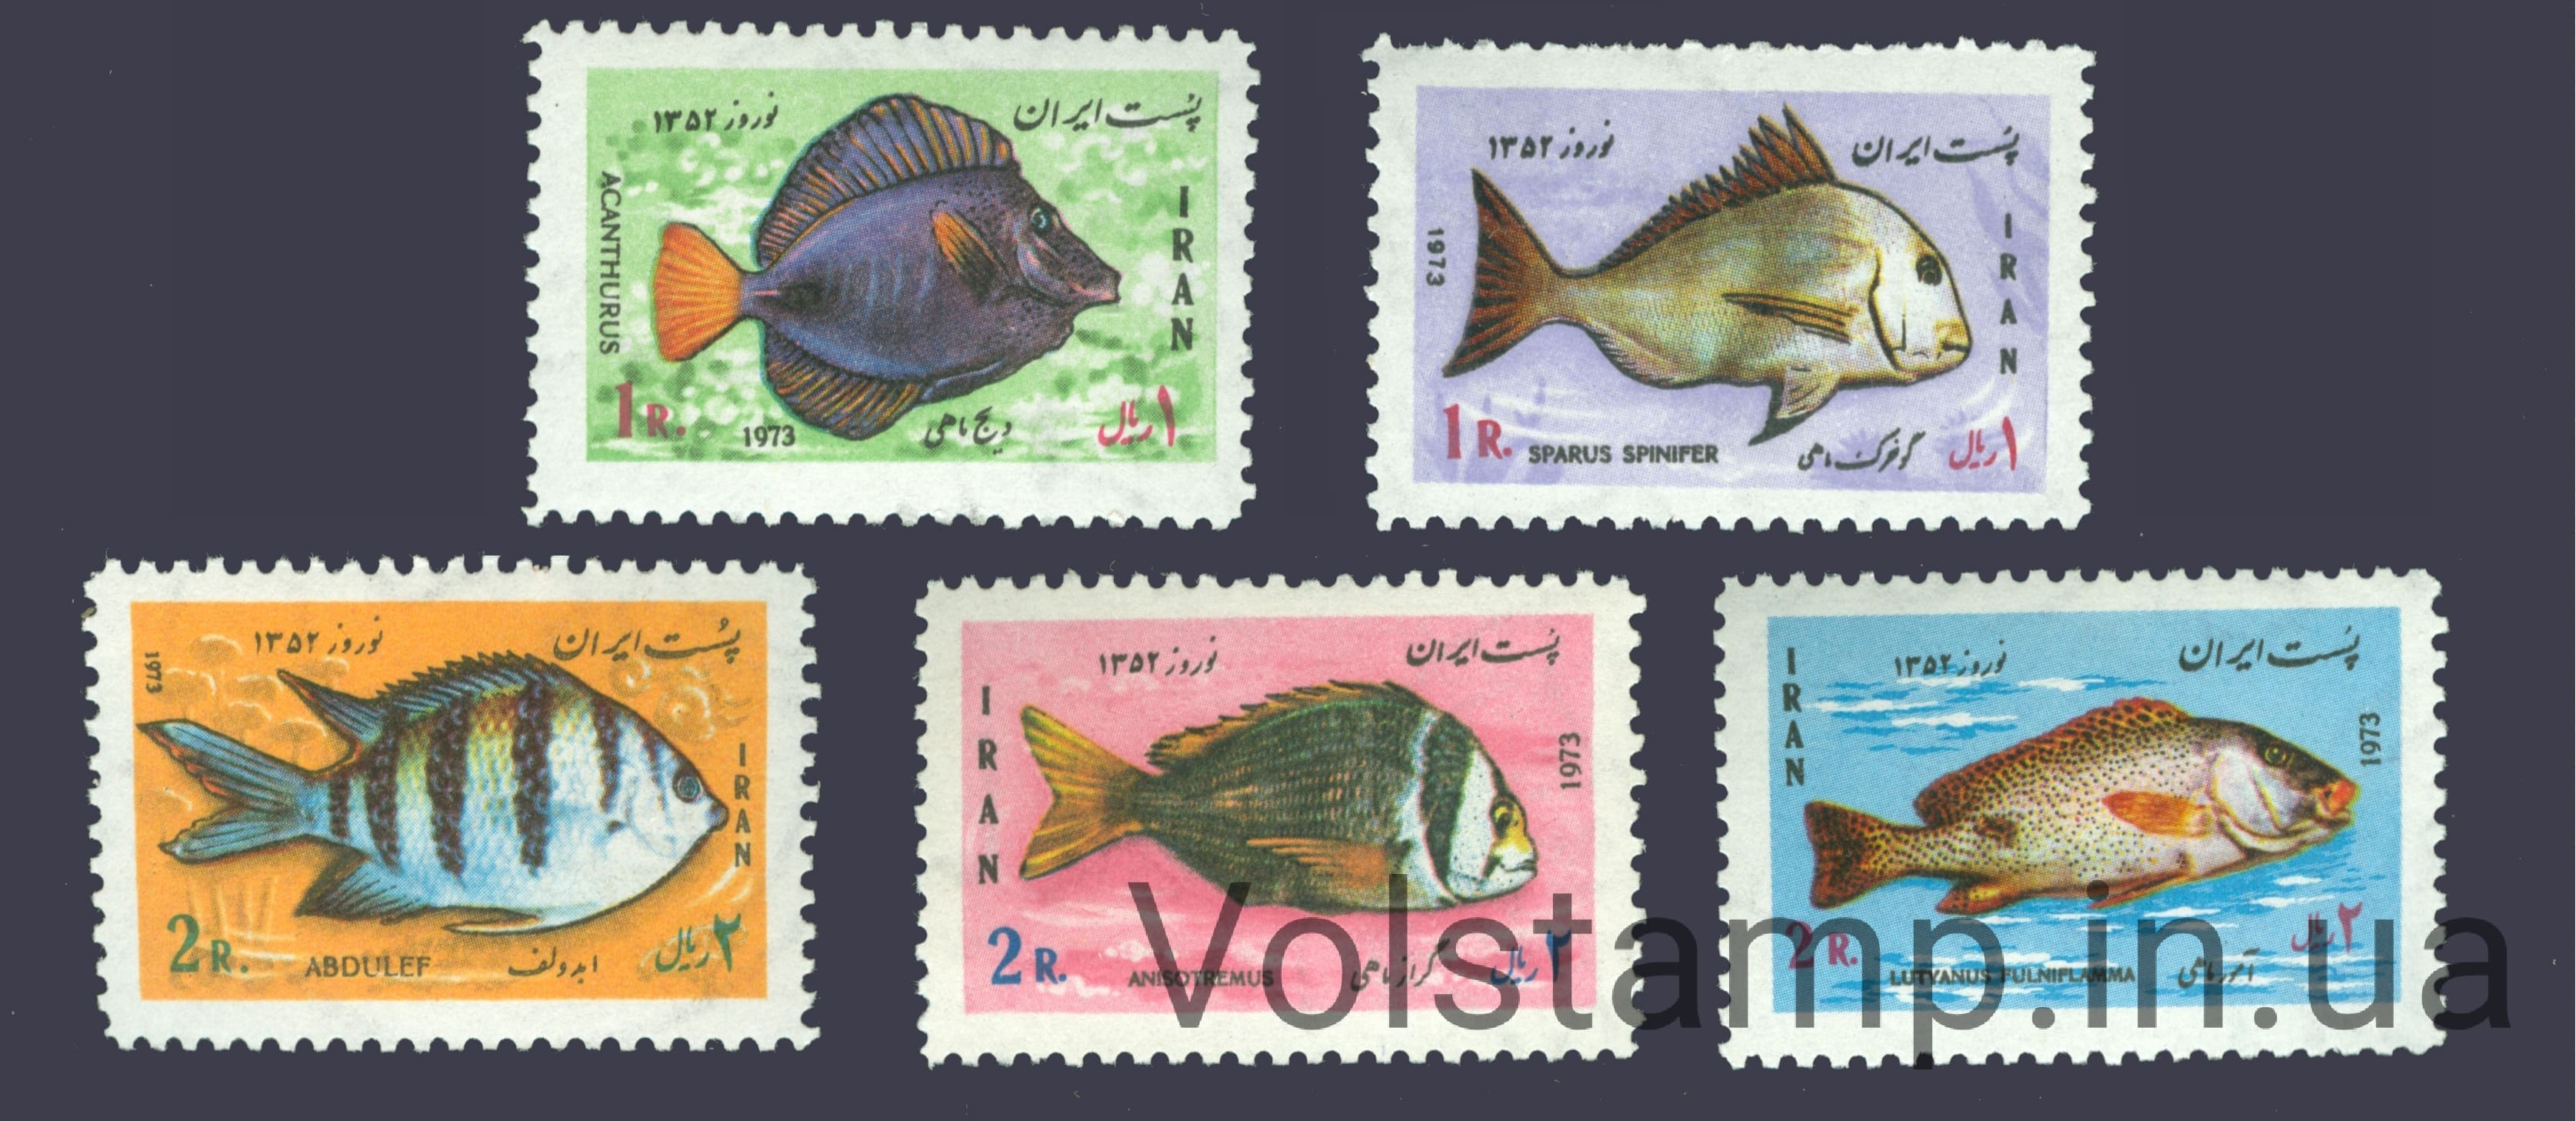 1973 Iran Series stamps (Fish) MNH №1618-1622